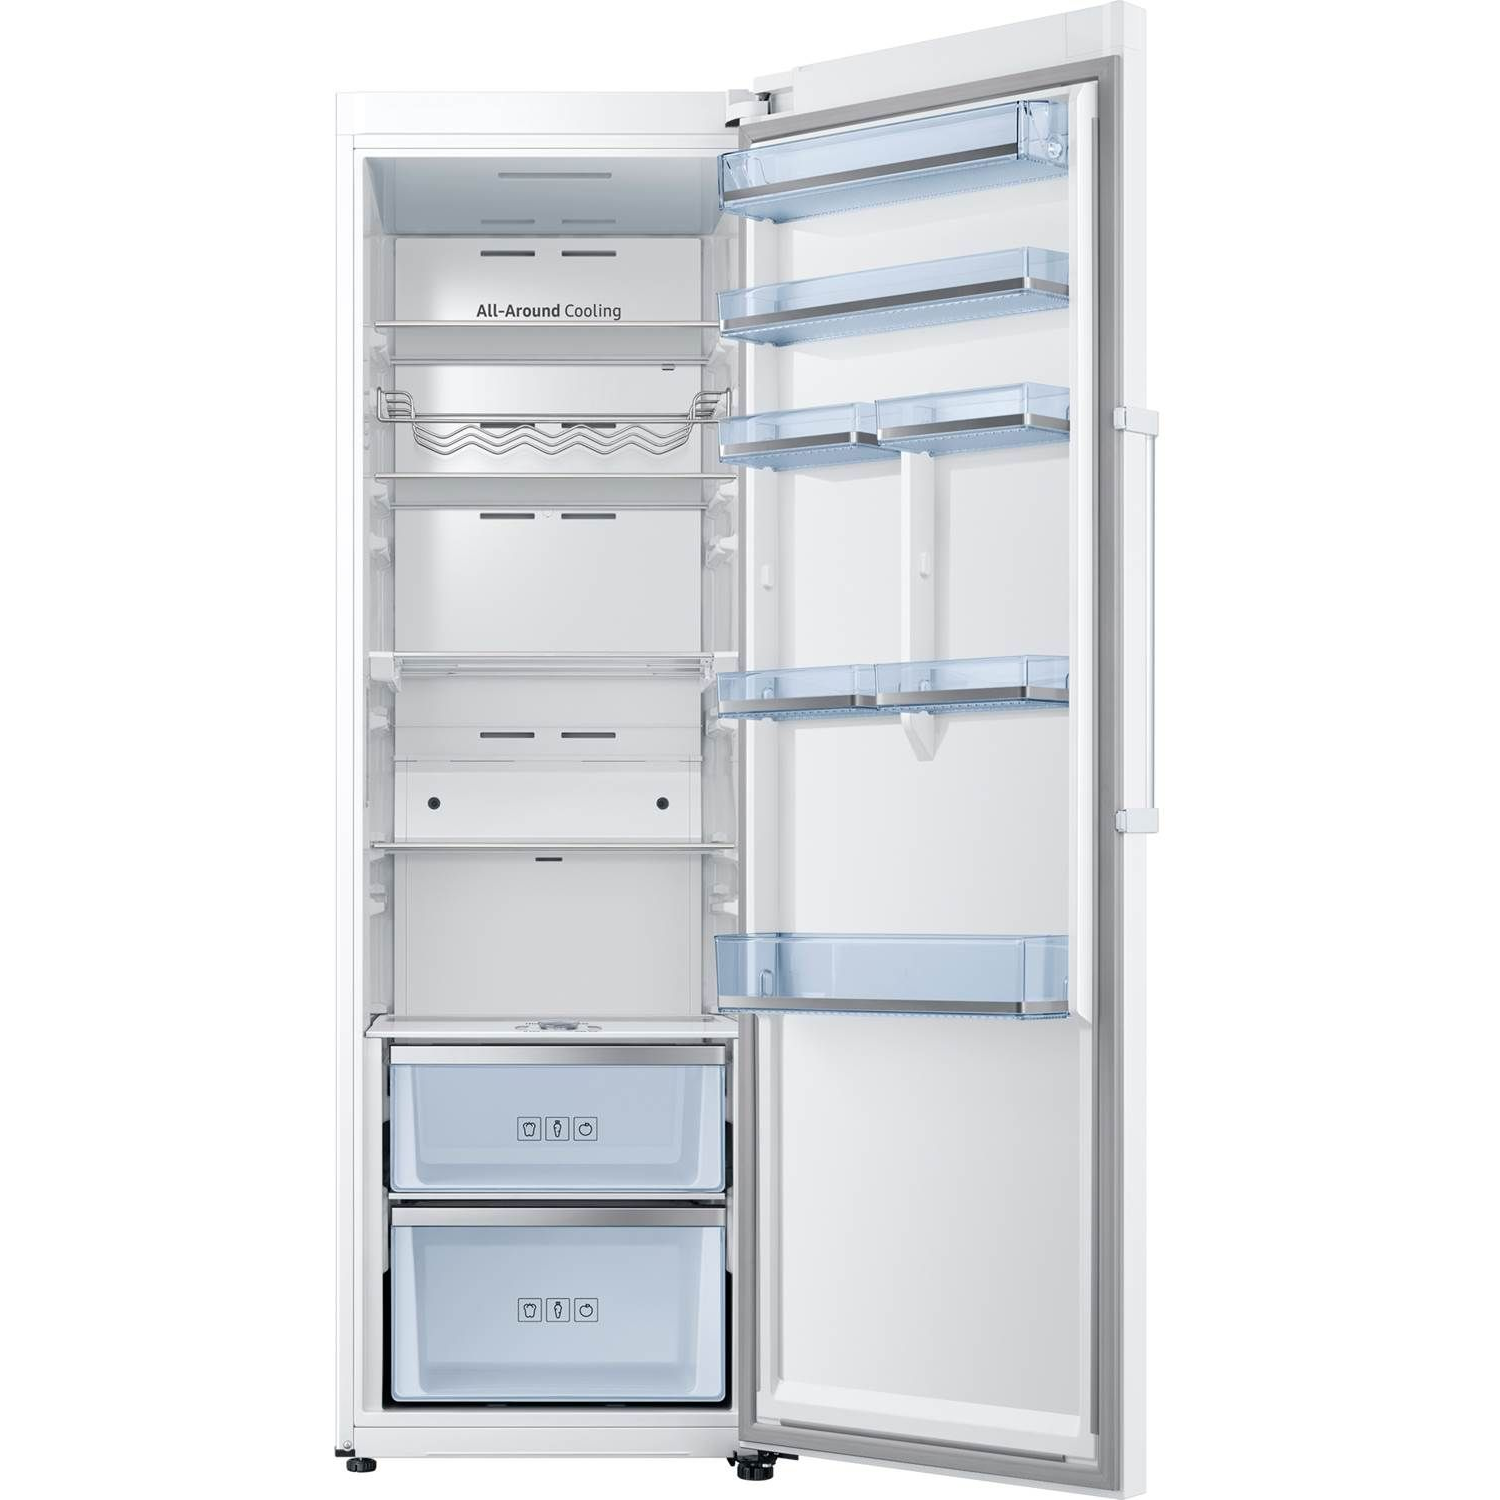 8806094451009 Samsung RR39M7540WW/EF - Fritstående køleskab Hvidevarer,Køleskabe,Fritstående køleskabe 2190003755 RR39M7540WW/EF